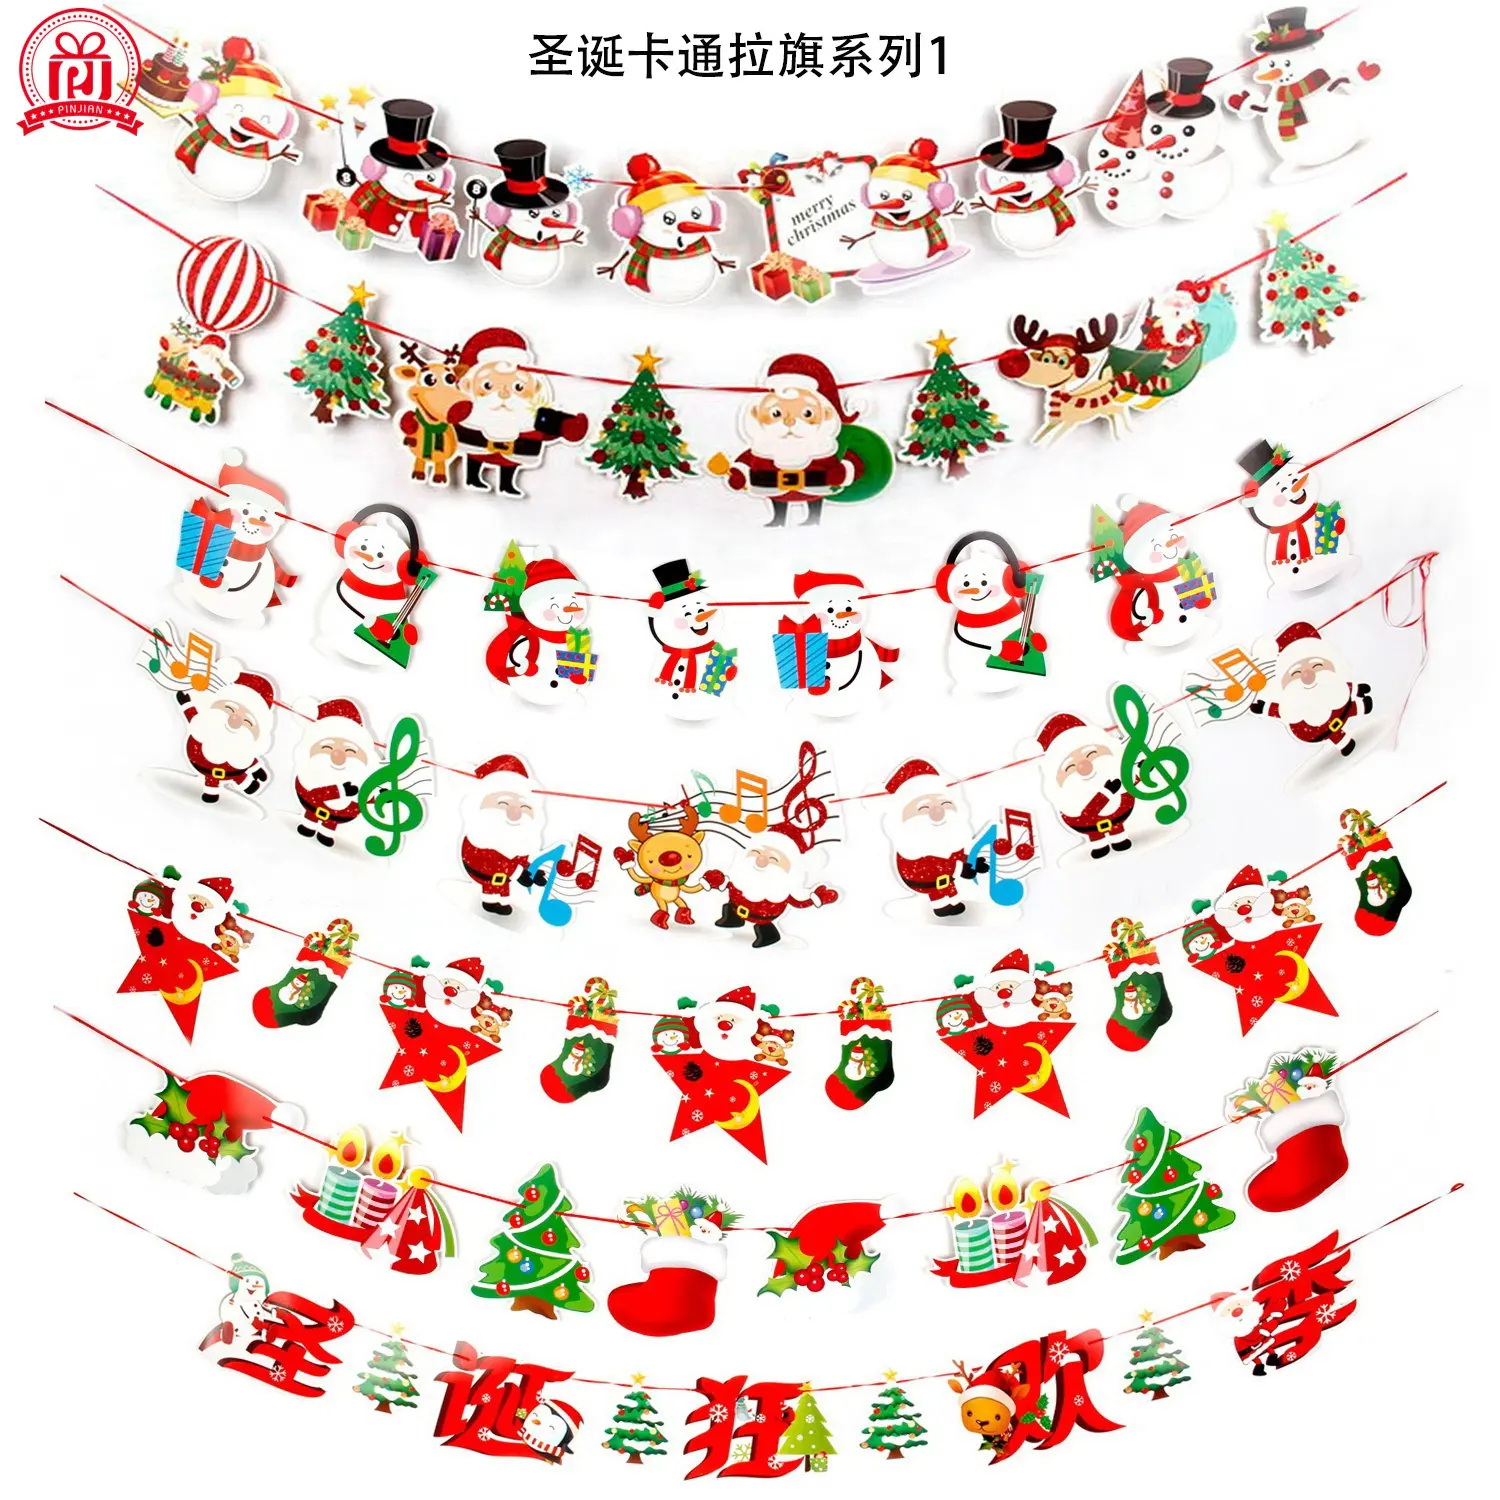 Giáng sinh biểu ngữ giấy treo biểu ngữ phim hoạt hình với mô hình của Santa Claus Snowman Tuần Lộc cho trang trí Giáng sinh